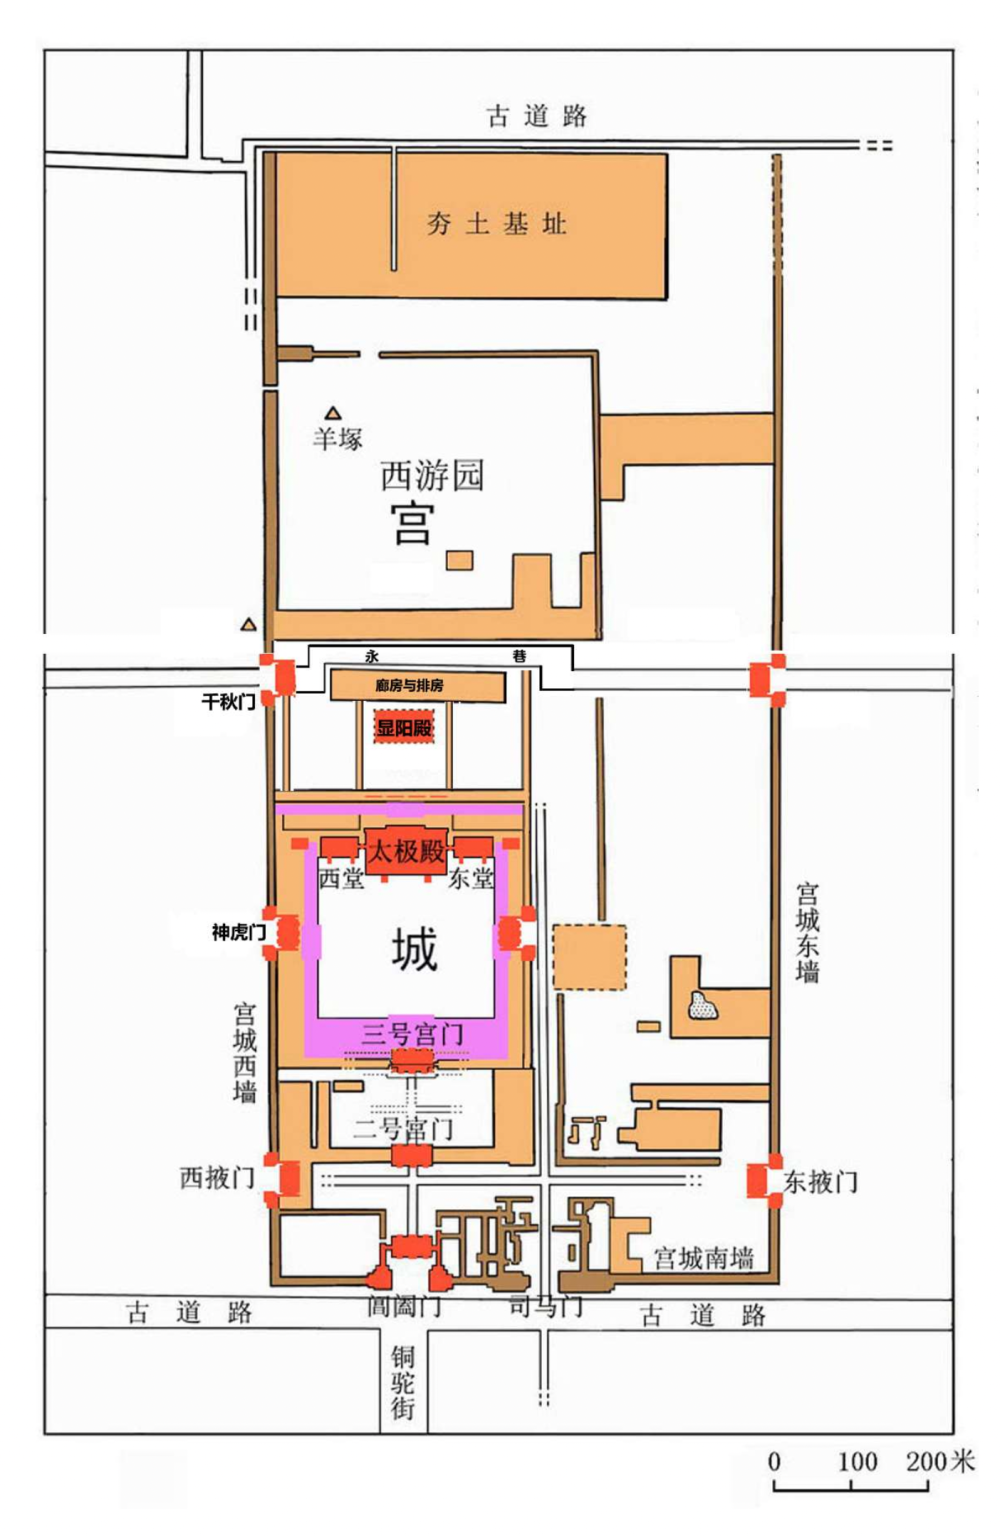 这是汉魏洛阳故城北魏宫城平面示意图(上为北)